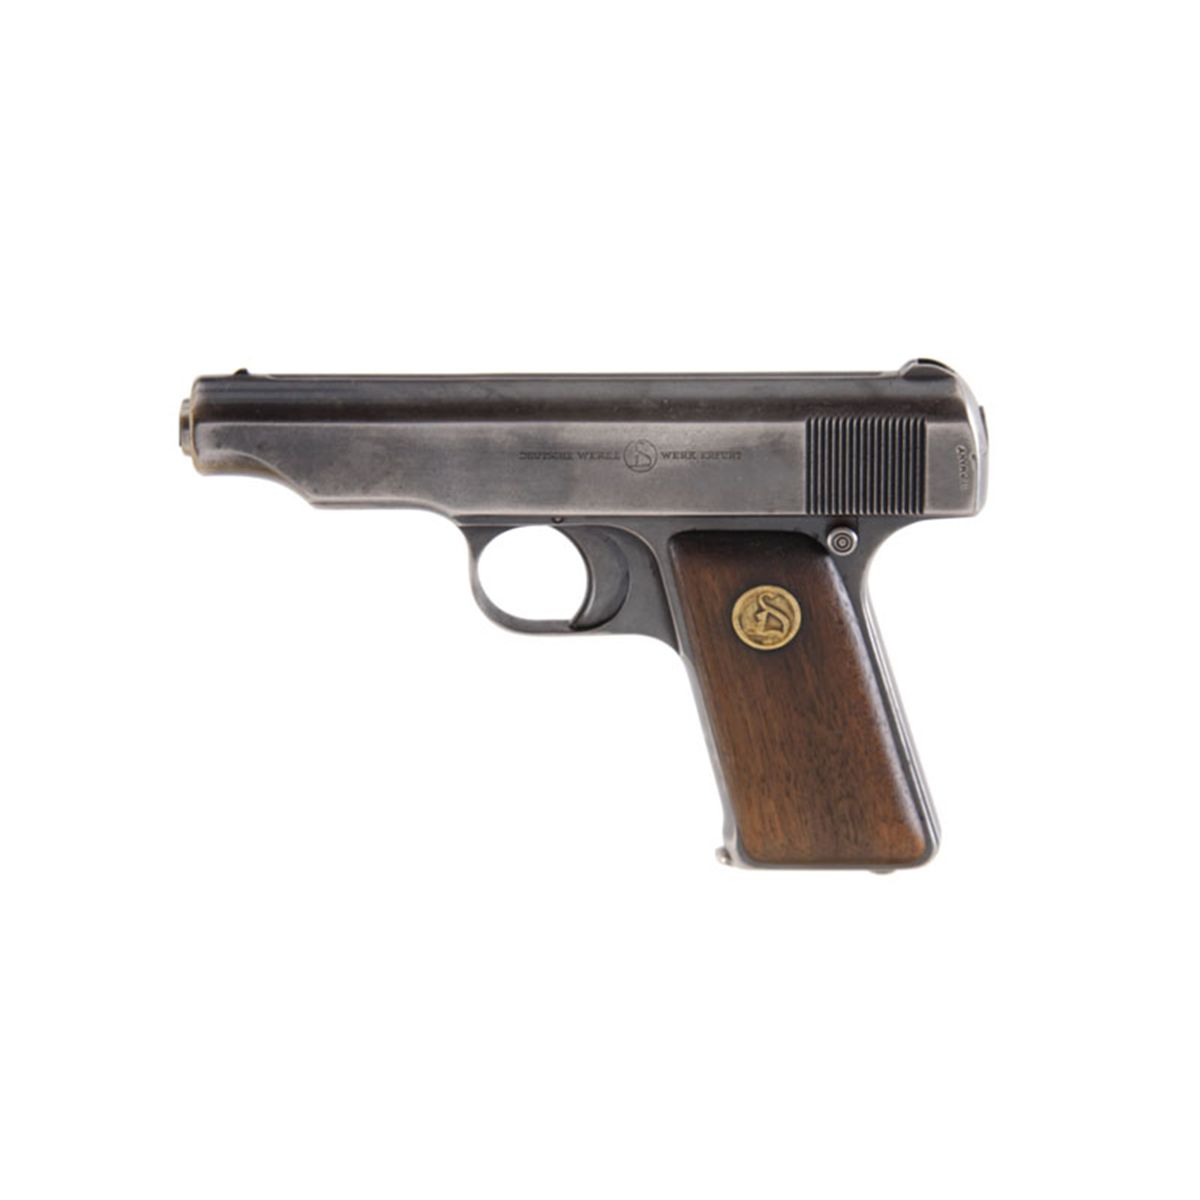 deutsche werke erfurt pistol price